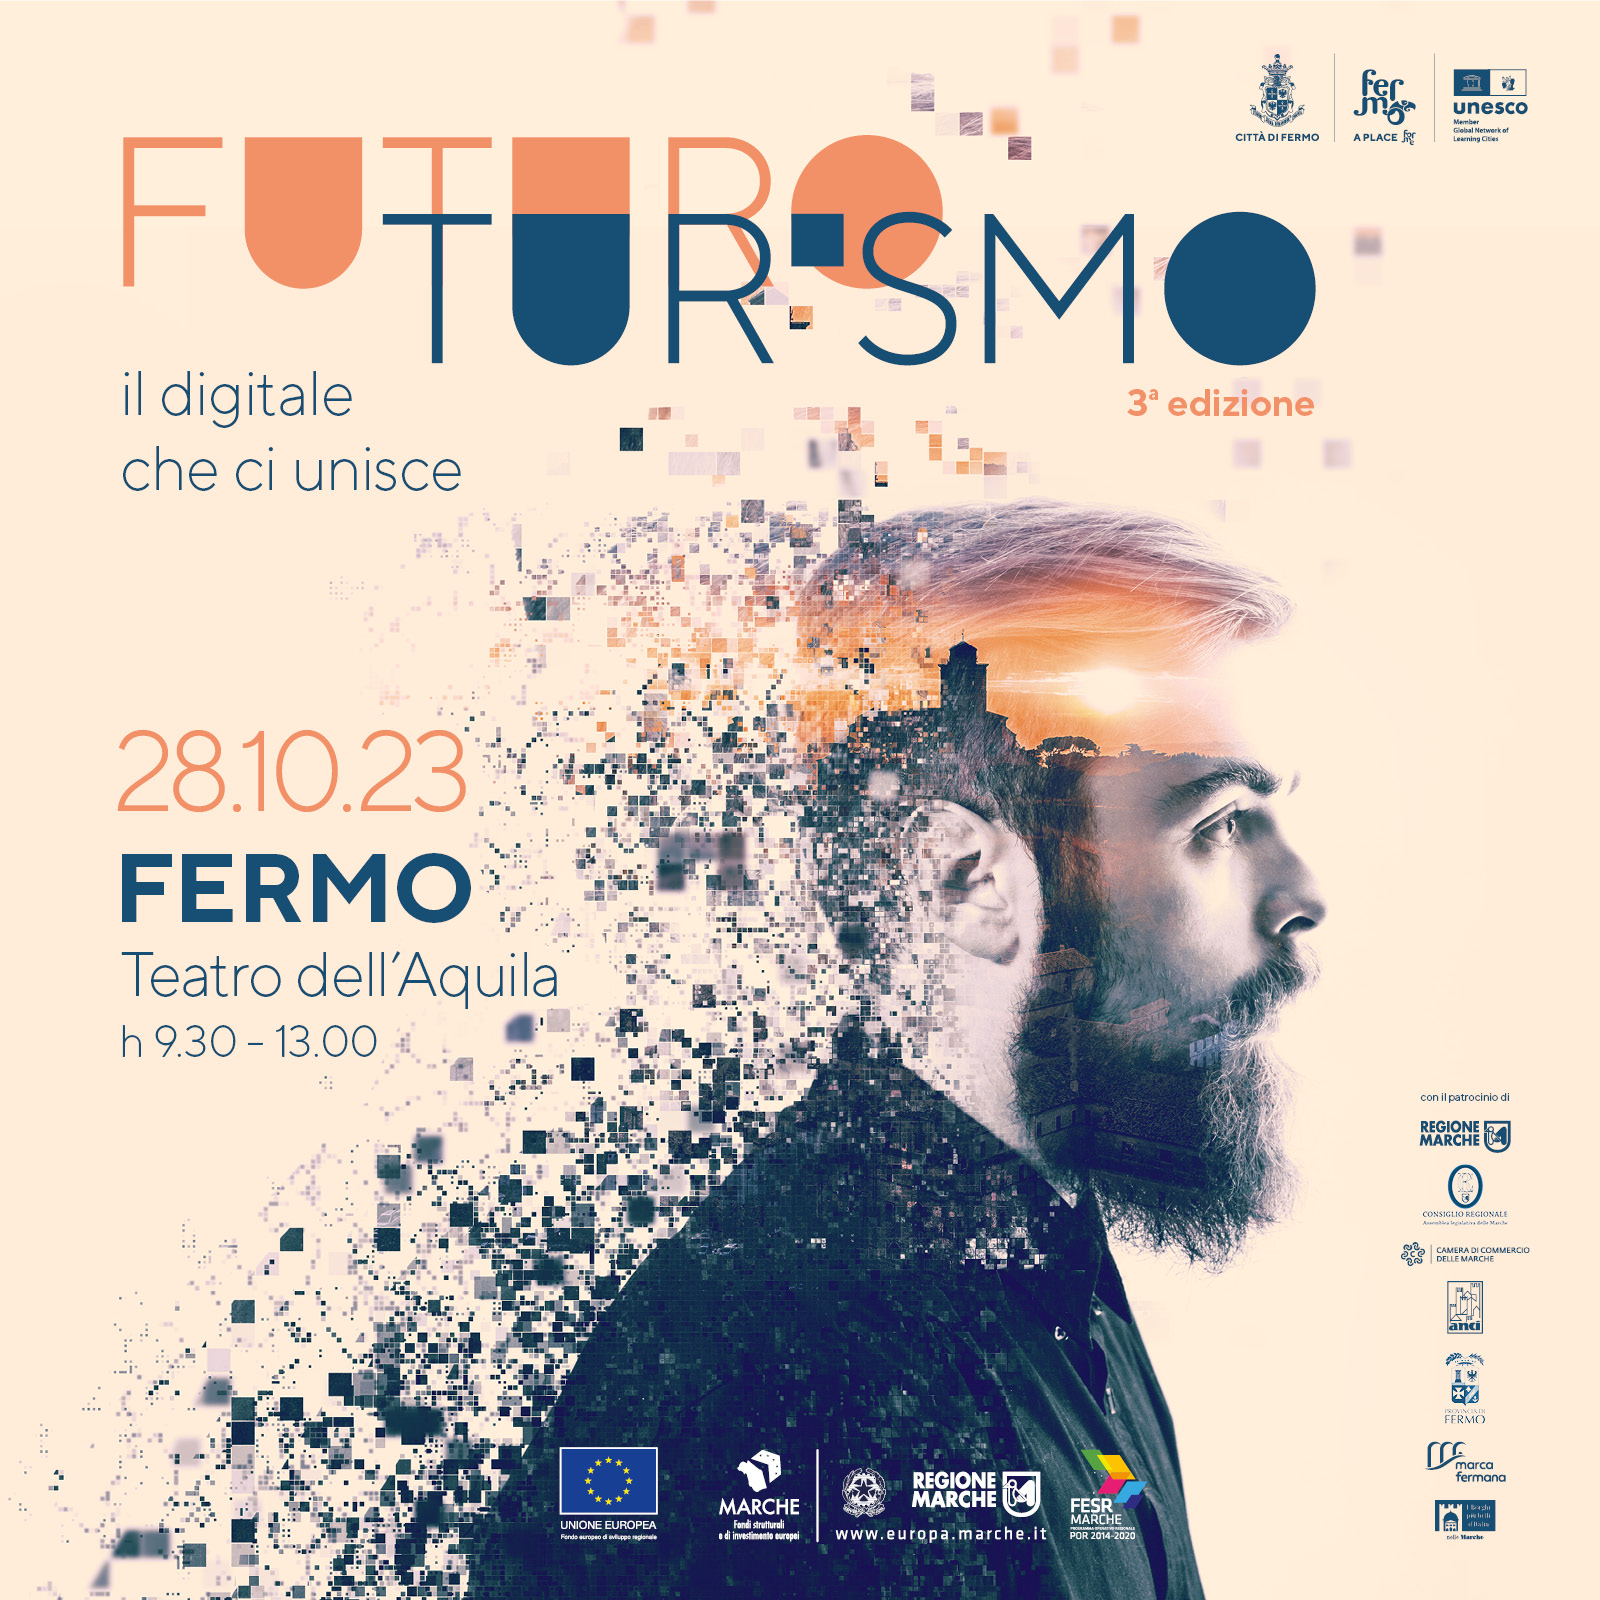 futuro-turismo-2023-fermo